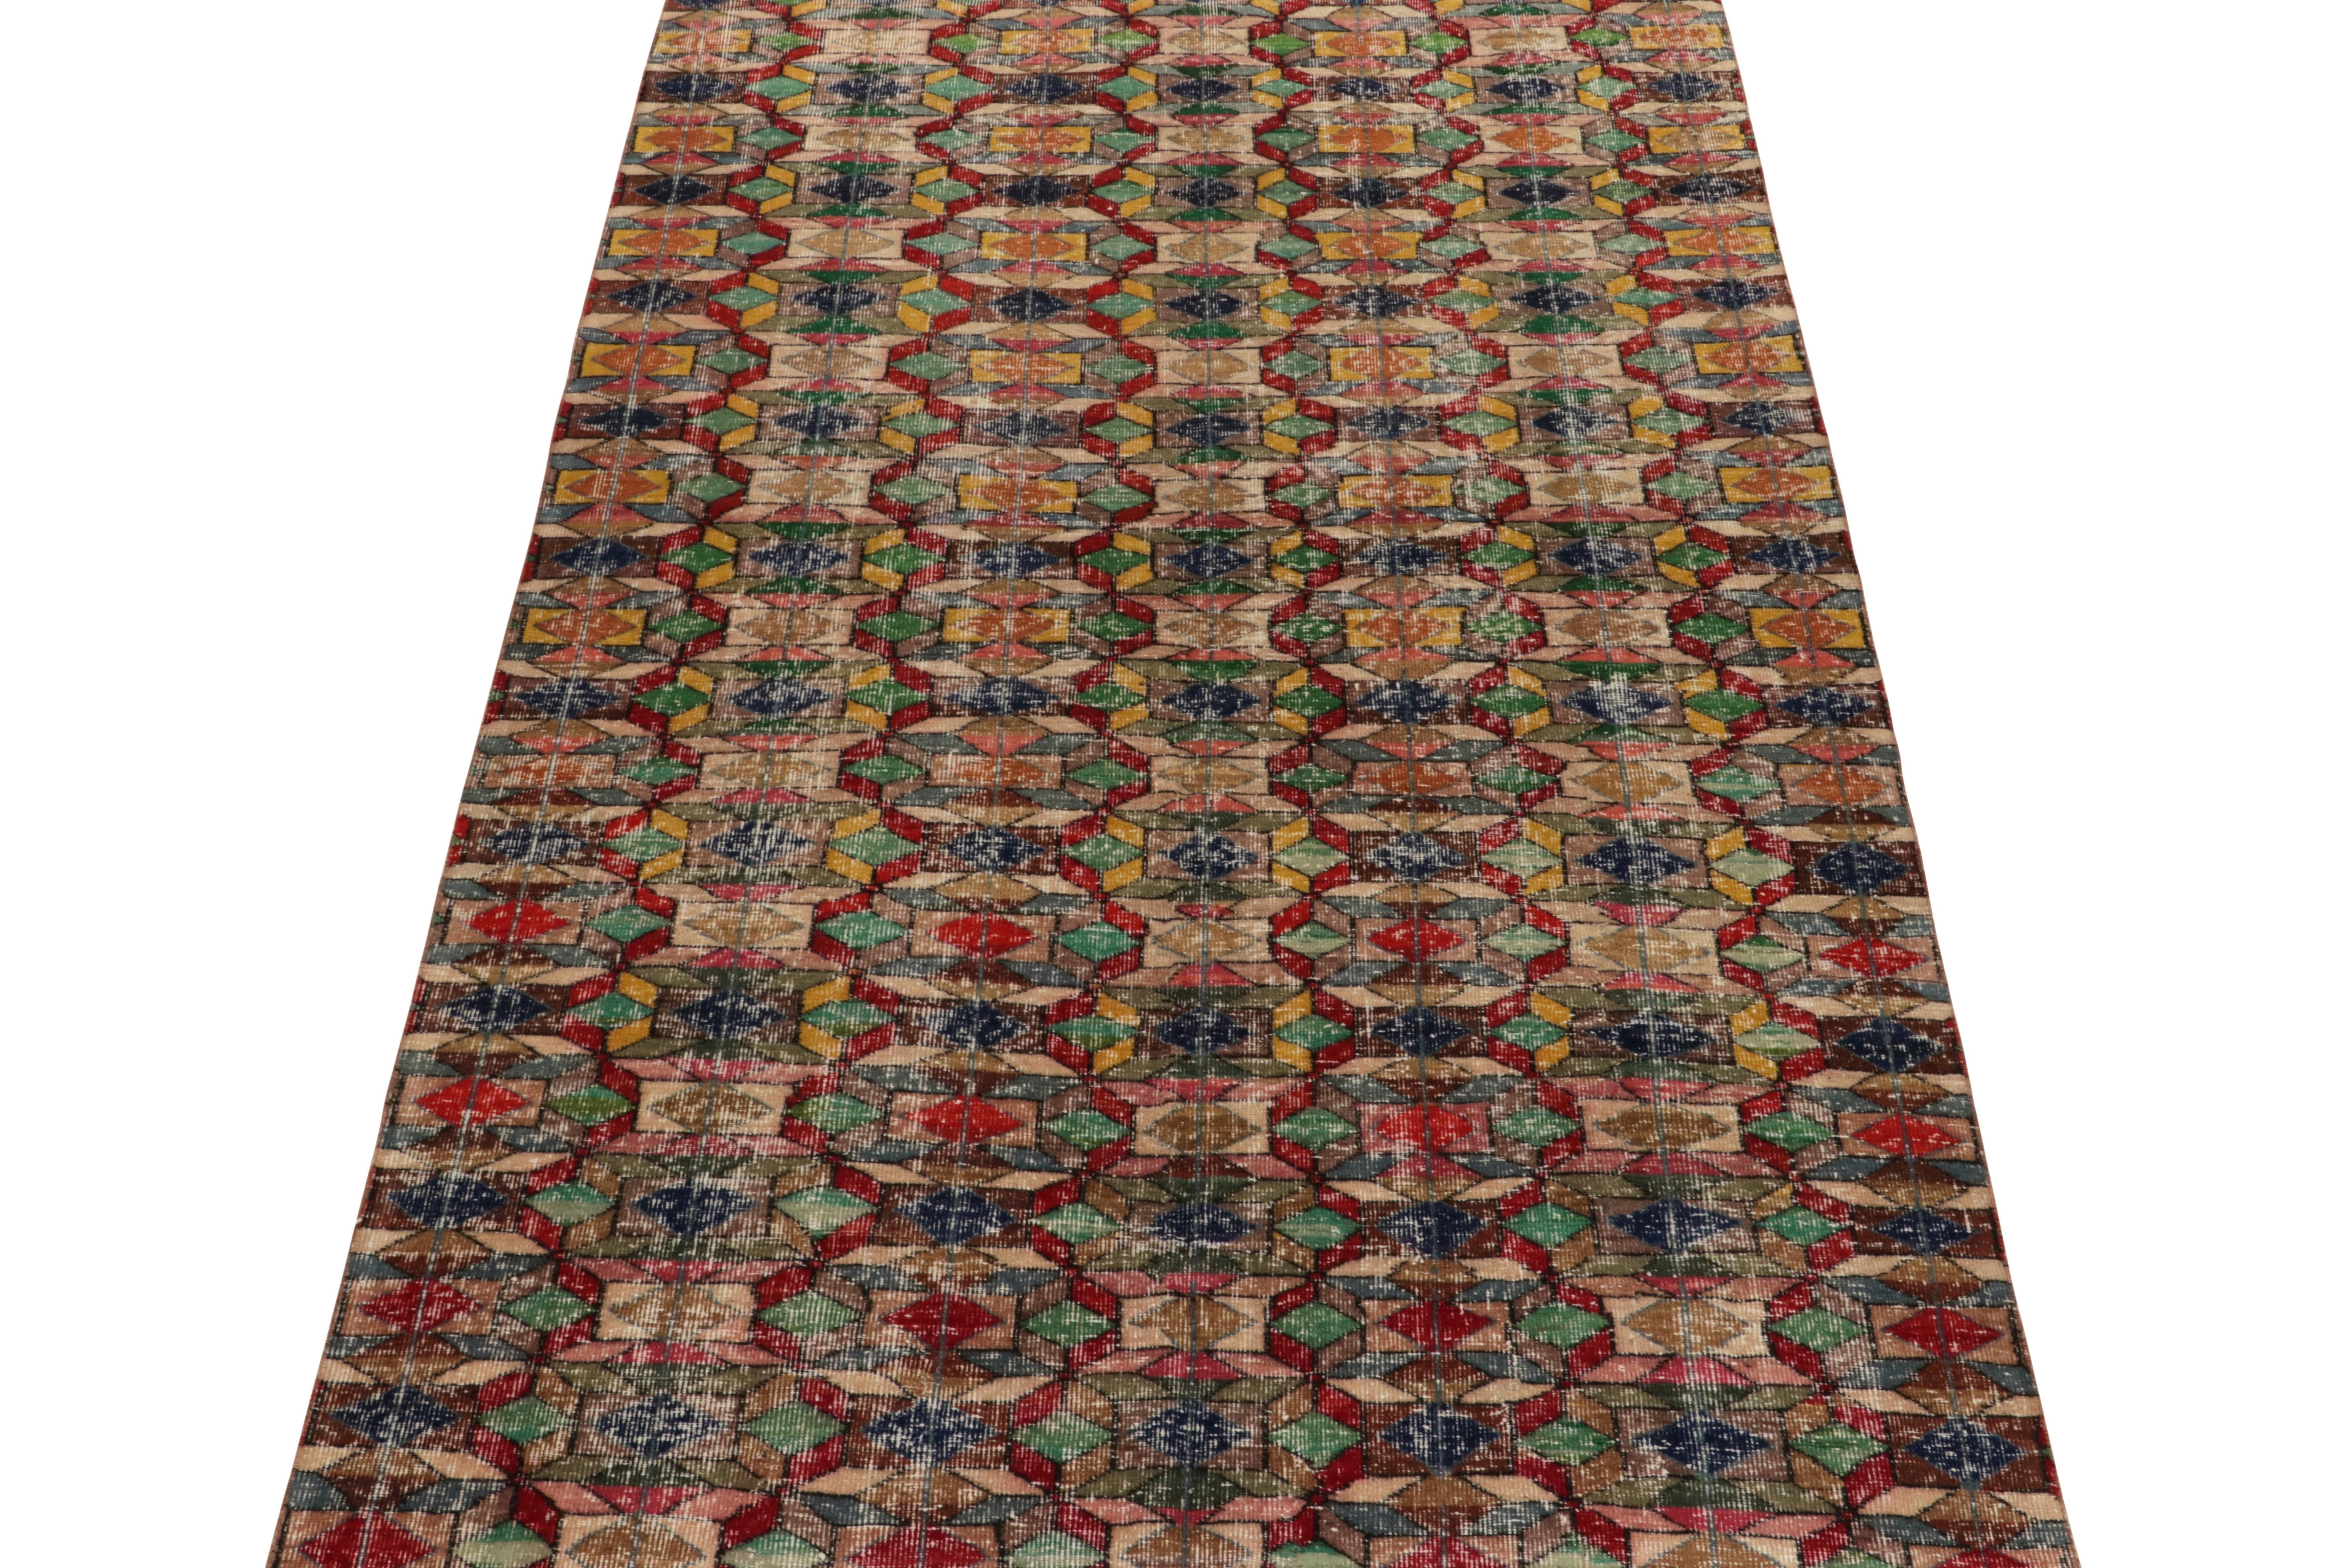 Ein 6x9 Vintage-Teppich aus dem Werk eines begehrten multidisziplinären türkischen Designers gehört zu den neuesten Produkten der kuratierten Mid-Century Pasha-Kollektion von Rug & Kilim. 

Ein wunderschönes Zusammenspiel von Grasgrün, Tintenblau,